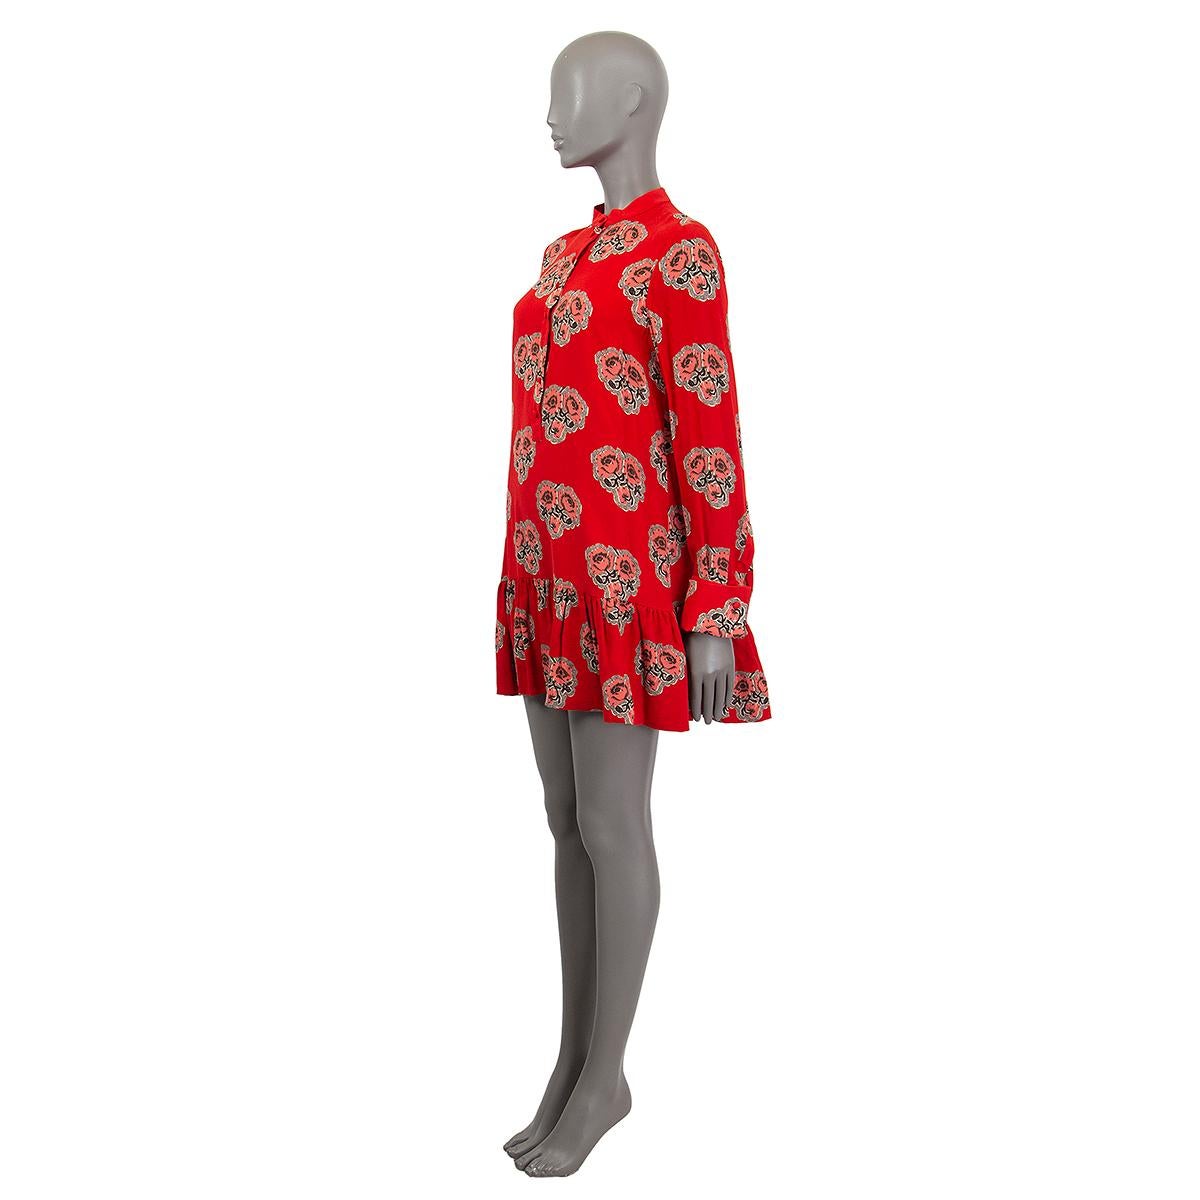 Alexander McQueen Kleid aus rotem Seidengeorgette (100%) mit Blumendruck in der Taille. Mit Mandarinekragen, Knopfleiste und langen Ärmeln mit Manschetten. Gefüttert mit Seide (100%). Wurde getragen und ist in excelelnt Zustand.

Tag Größe 42
Größe